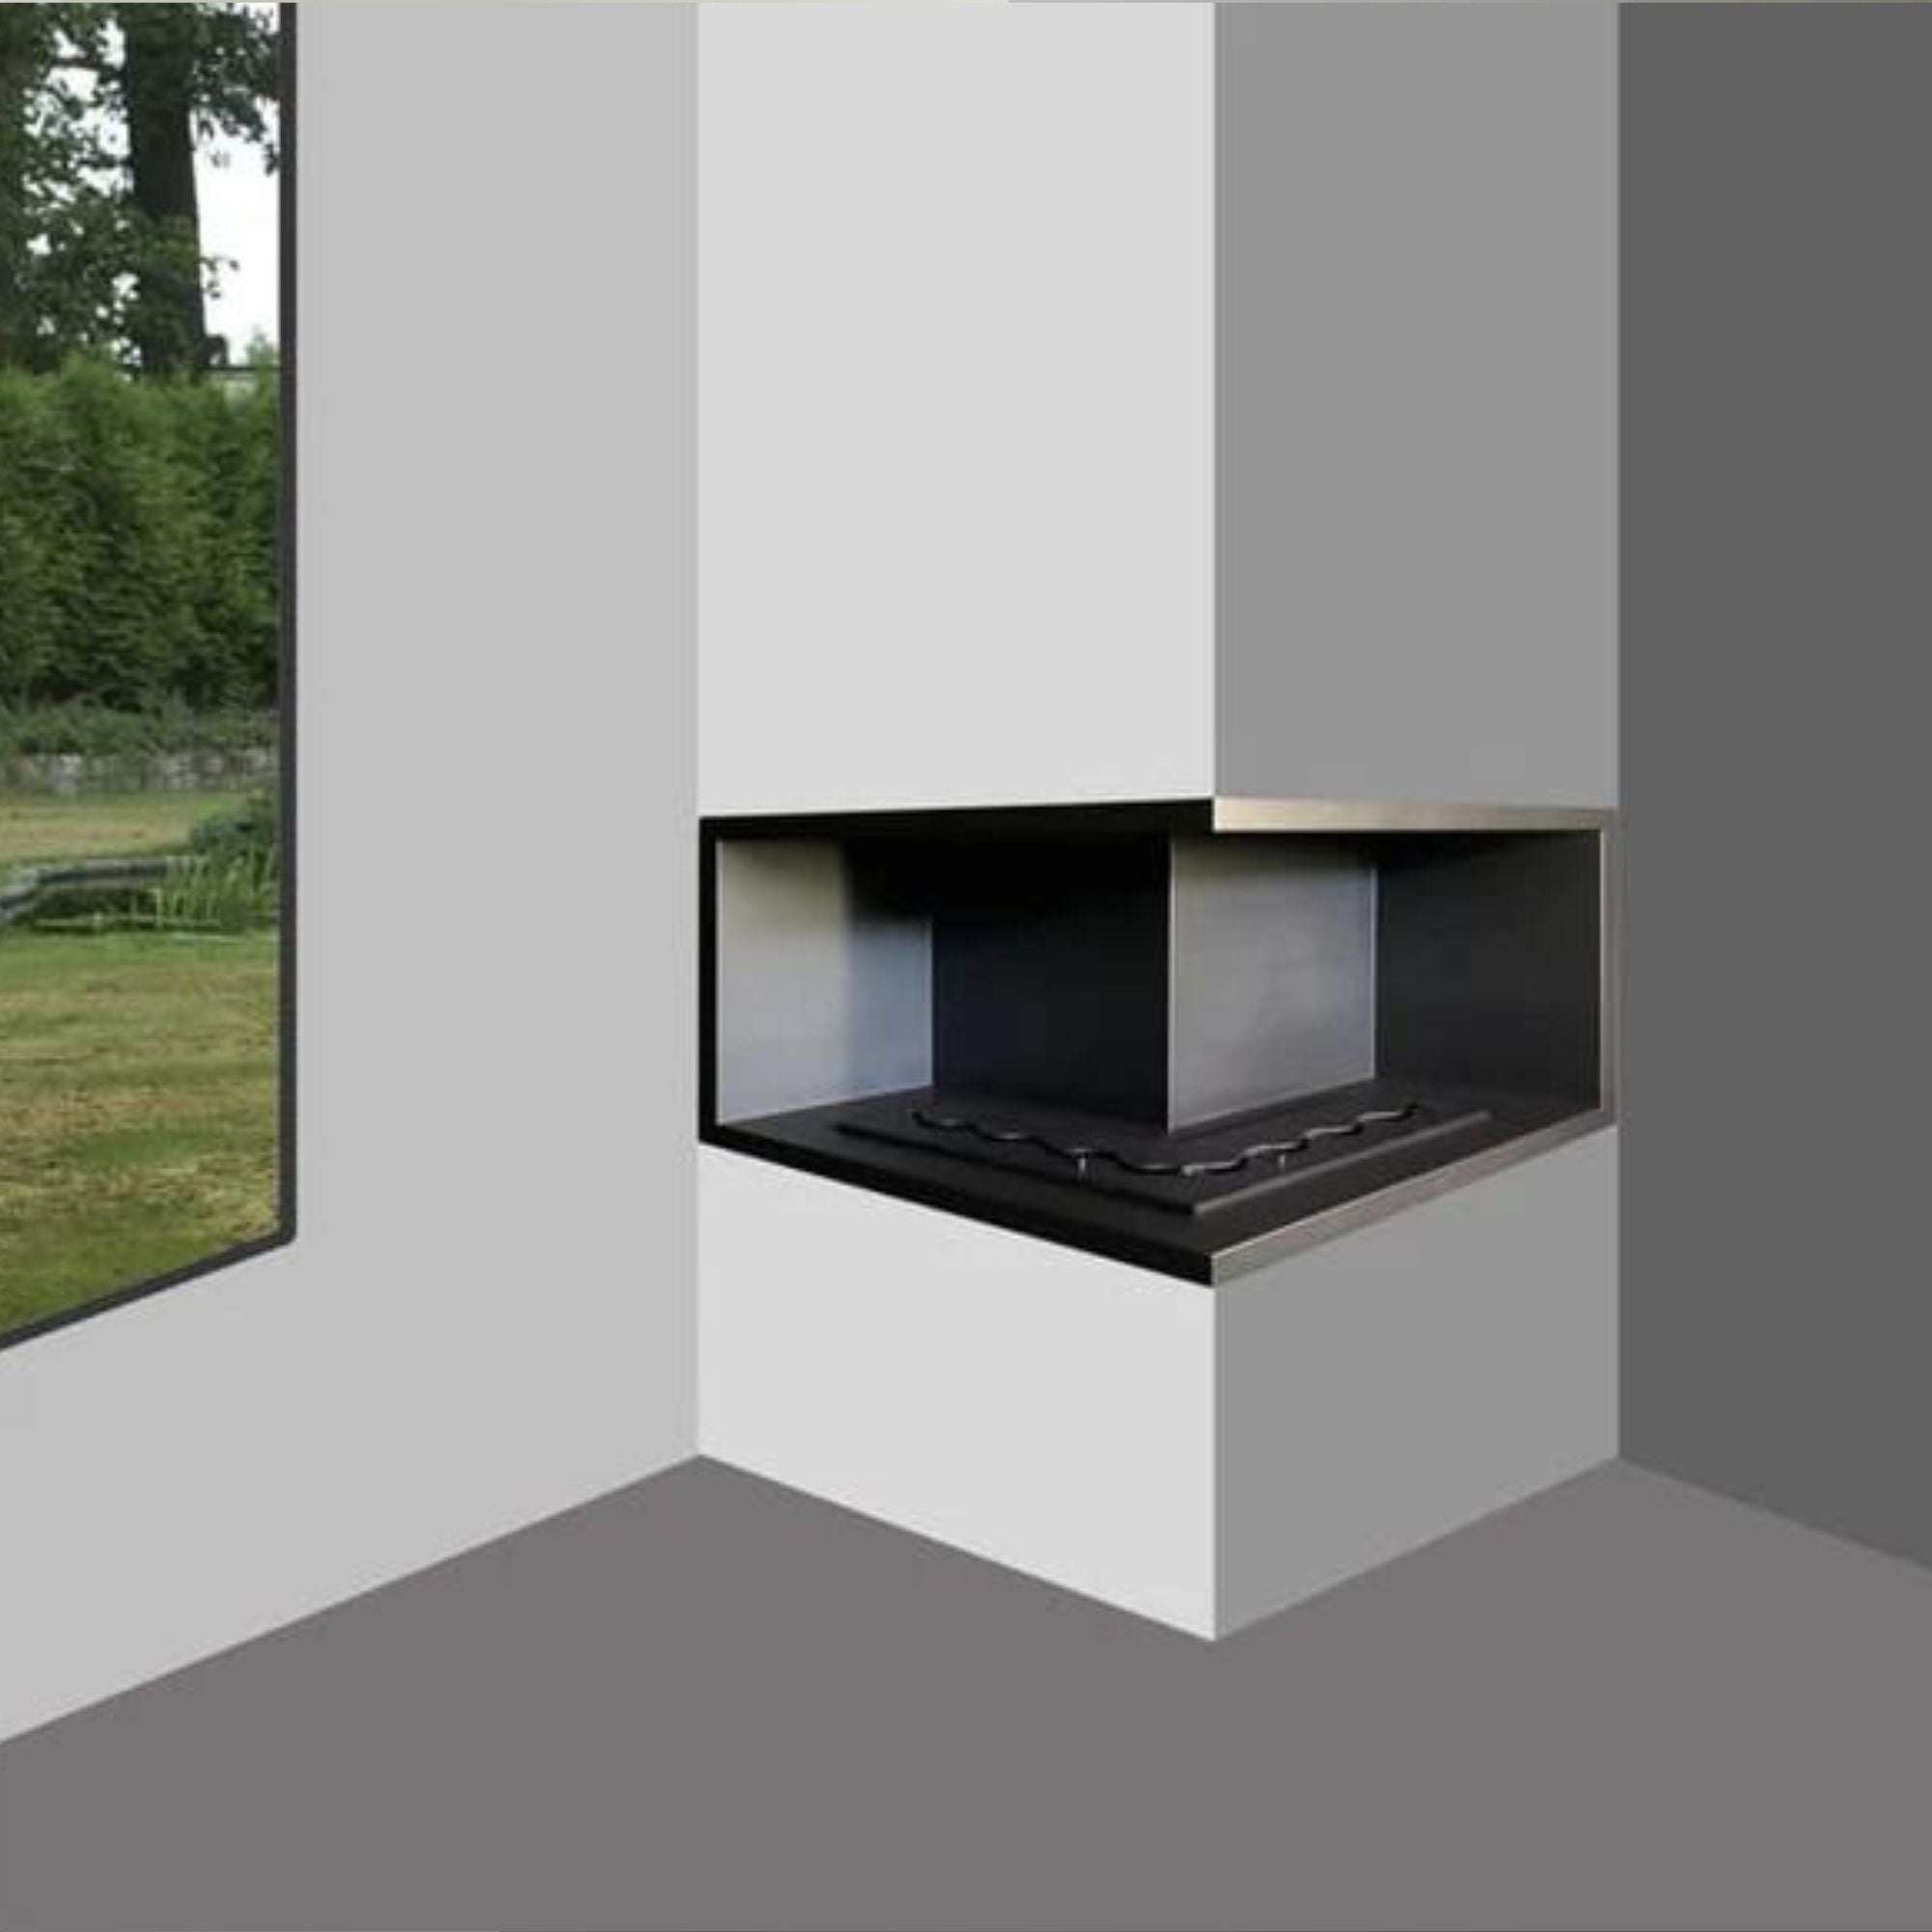 Nila Hoek Ultra Bio Built-in Fireplace